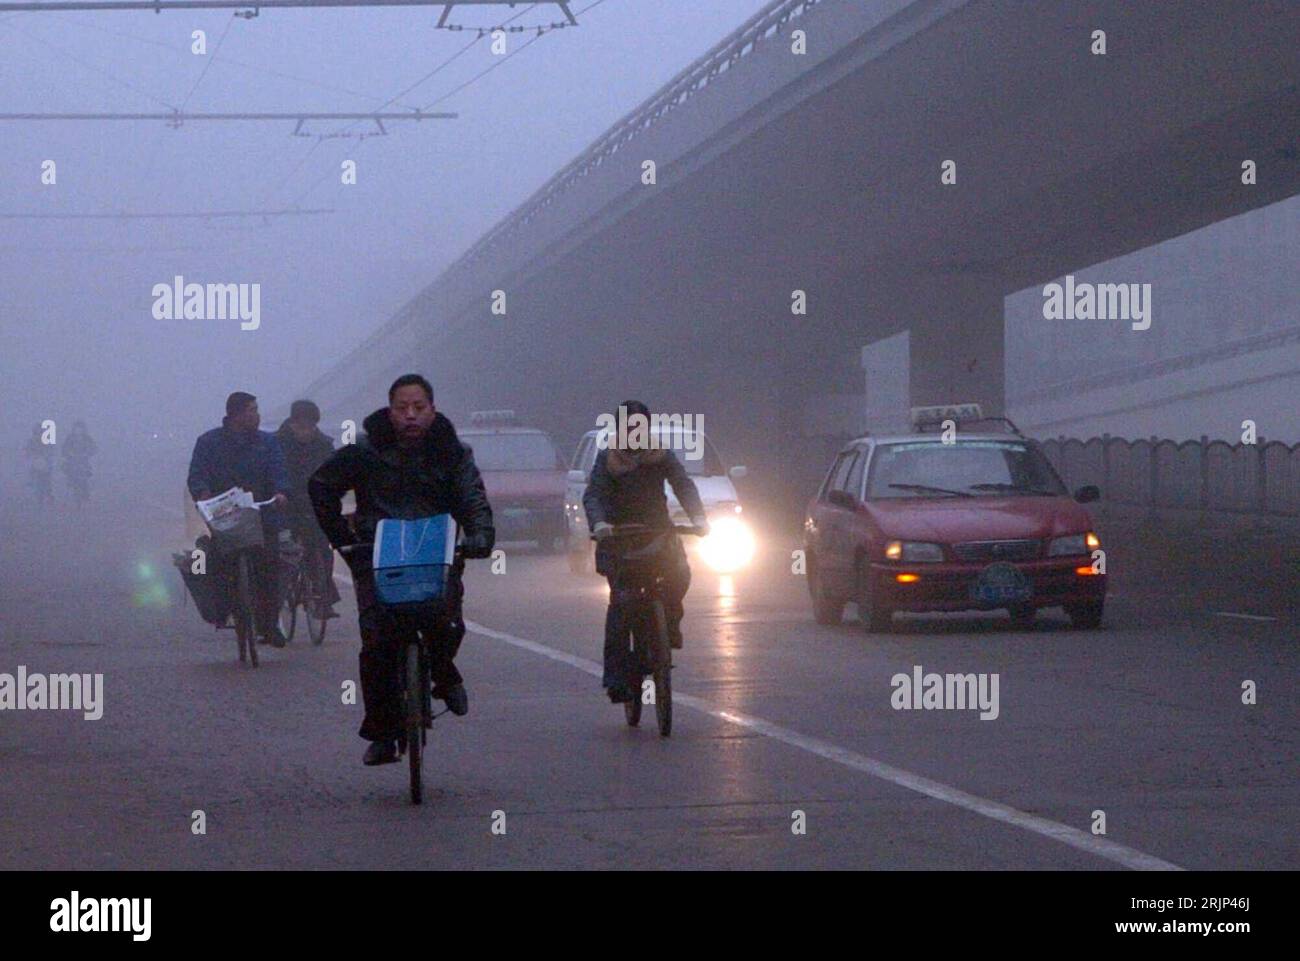 Bildnummer: 51081363 Datum: 28.01.2006 Copyright: imago/Xinhua Fahrradfahrer in Zhengzhou kämpfen sich durch dichten Nebel PUBLICATIONxNOTxINxCHN, Personen; 2006, Zhengzhou, Radfahrer, Fahrradfahren, Radfahren, Fahrräder, Räder, Rad fahren, Fahrrad, fahrend, fährt, Einheimischer, Einheimische, Land, Leute, dichter, neblig, Wetter, Witterung, Witterungsverhältnisse, Straßenverhältnisse, Sicht, schlecht, schlechte; , quer, Kbdig, totale, Cina, Straße, Verkehr, Foto Stock